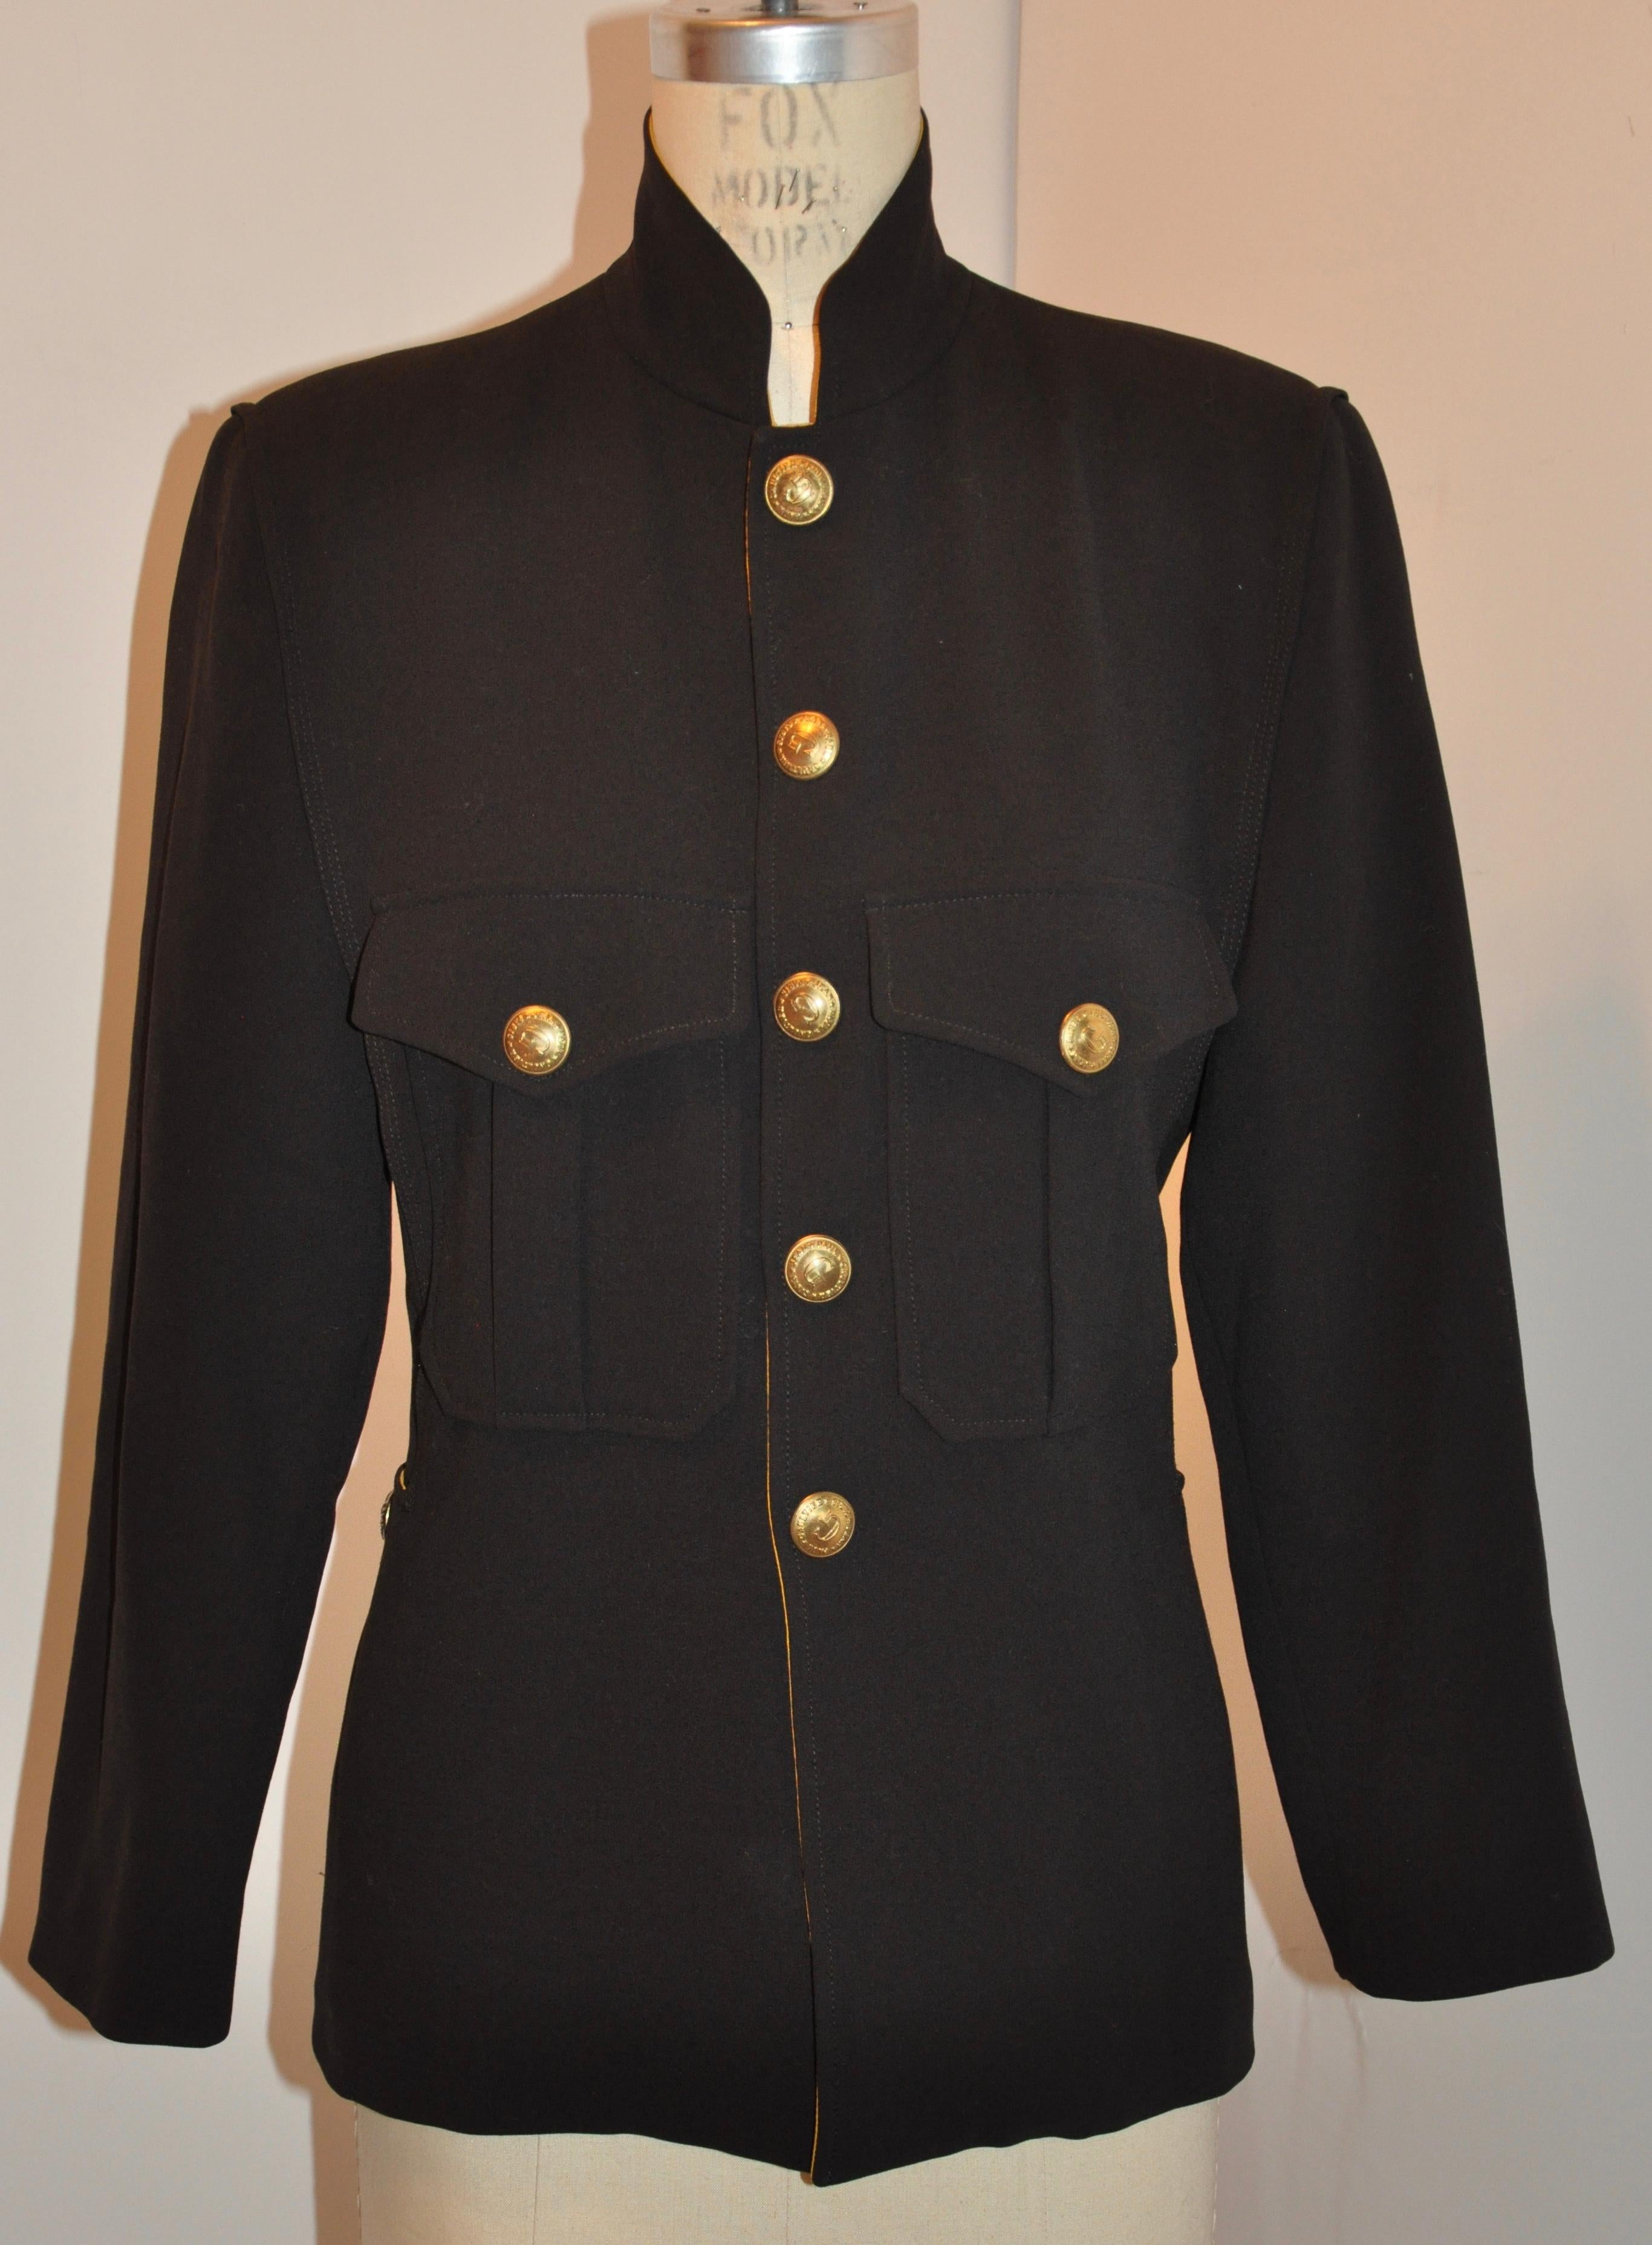 black military style jacket